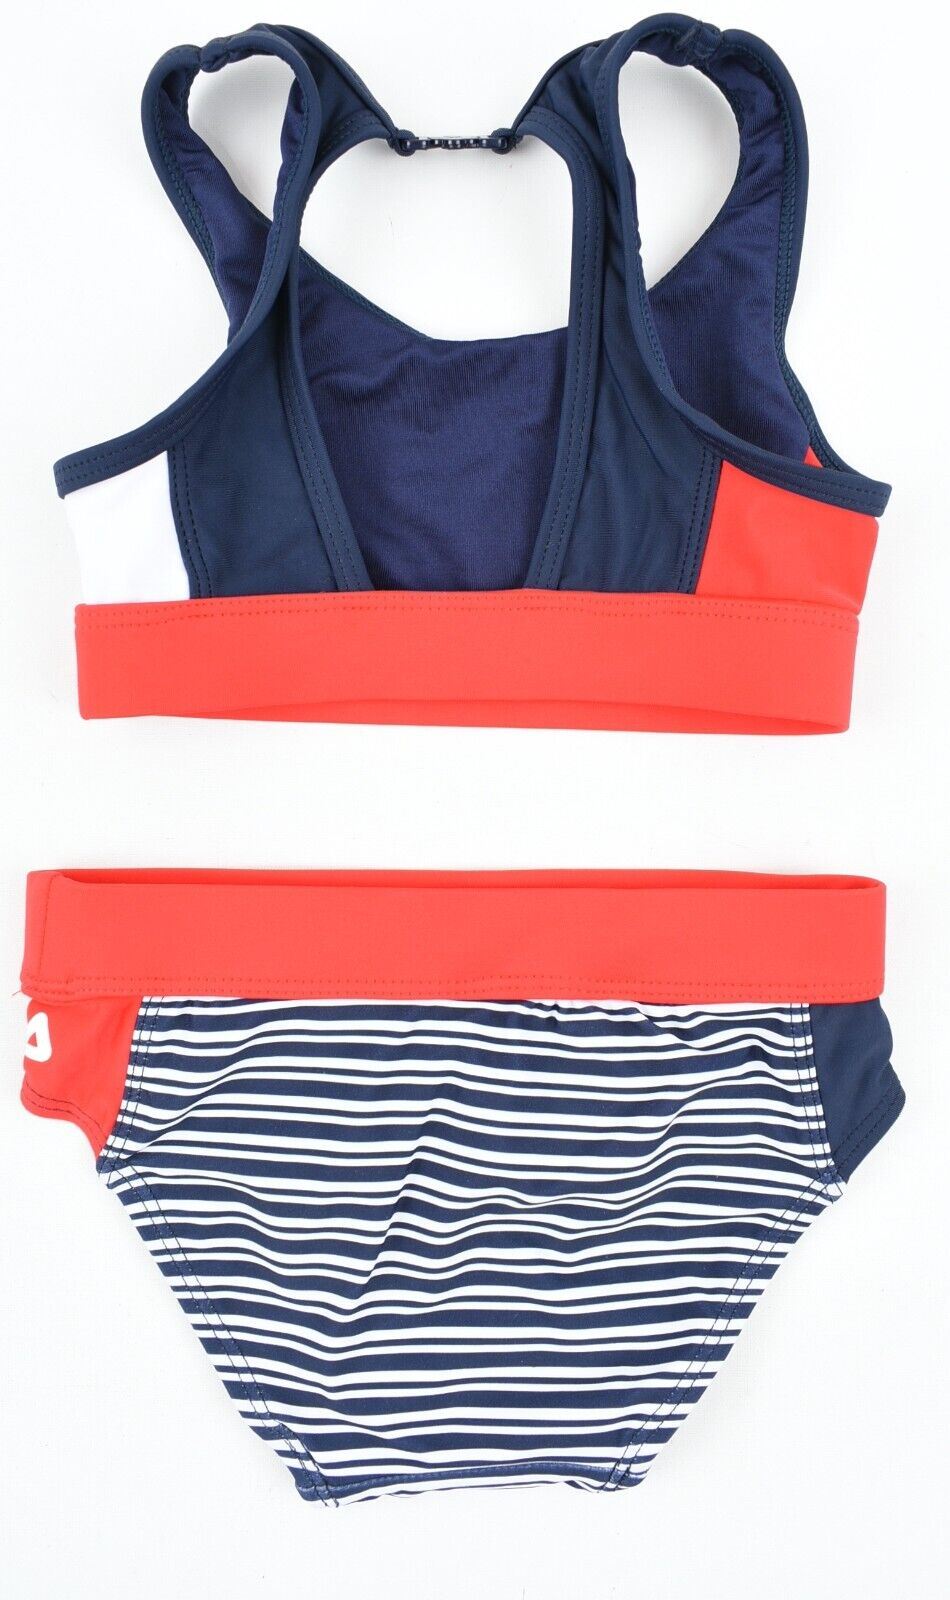 FILA Swimwear: Girls 2-pc Bikini Set, Navy/White/Red, size 3-4 years